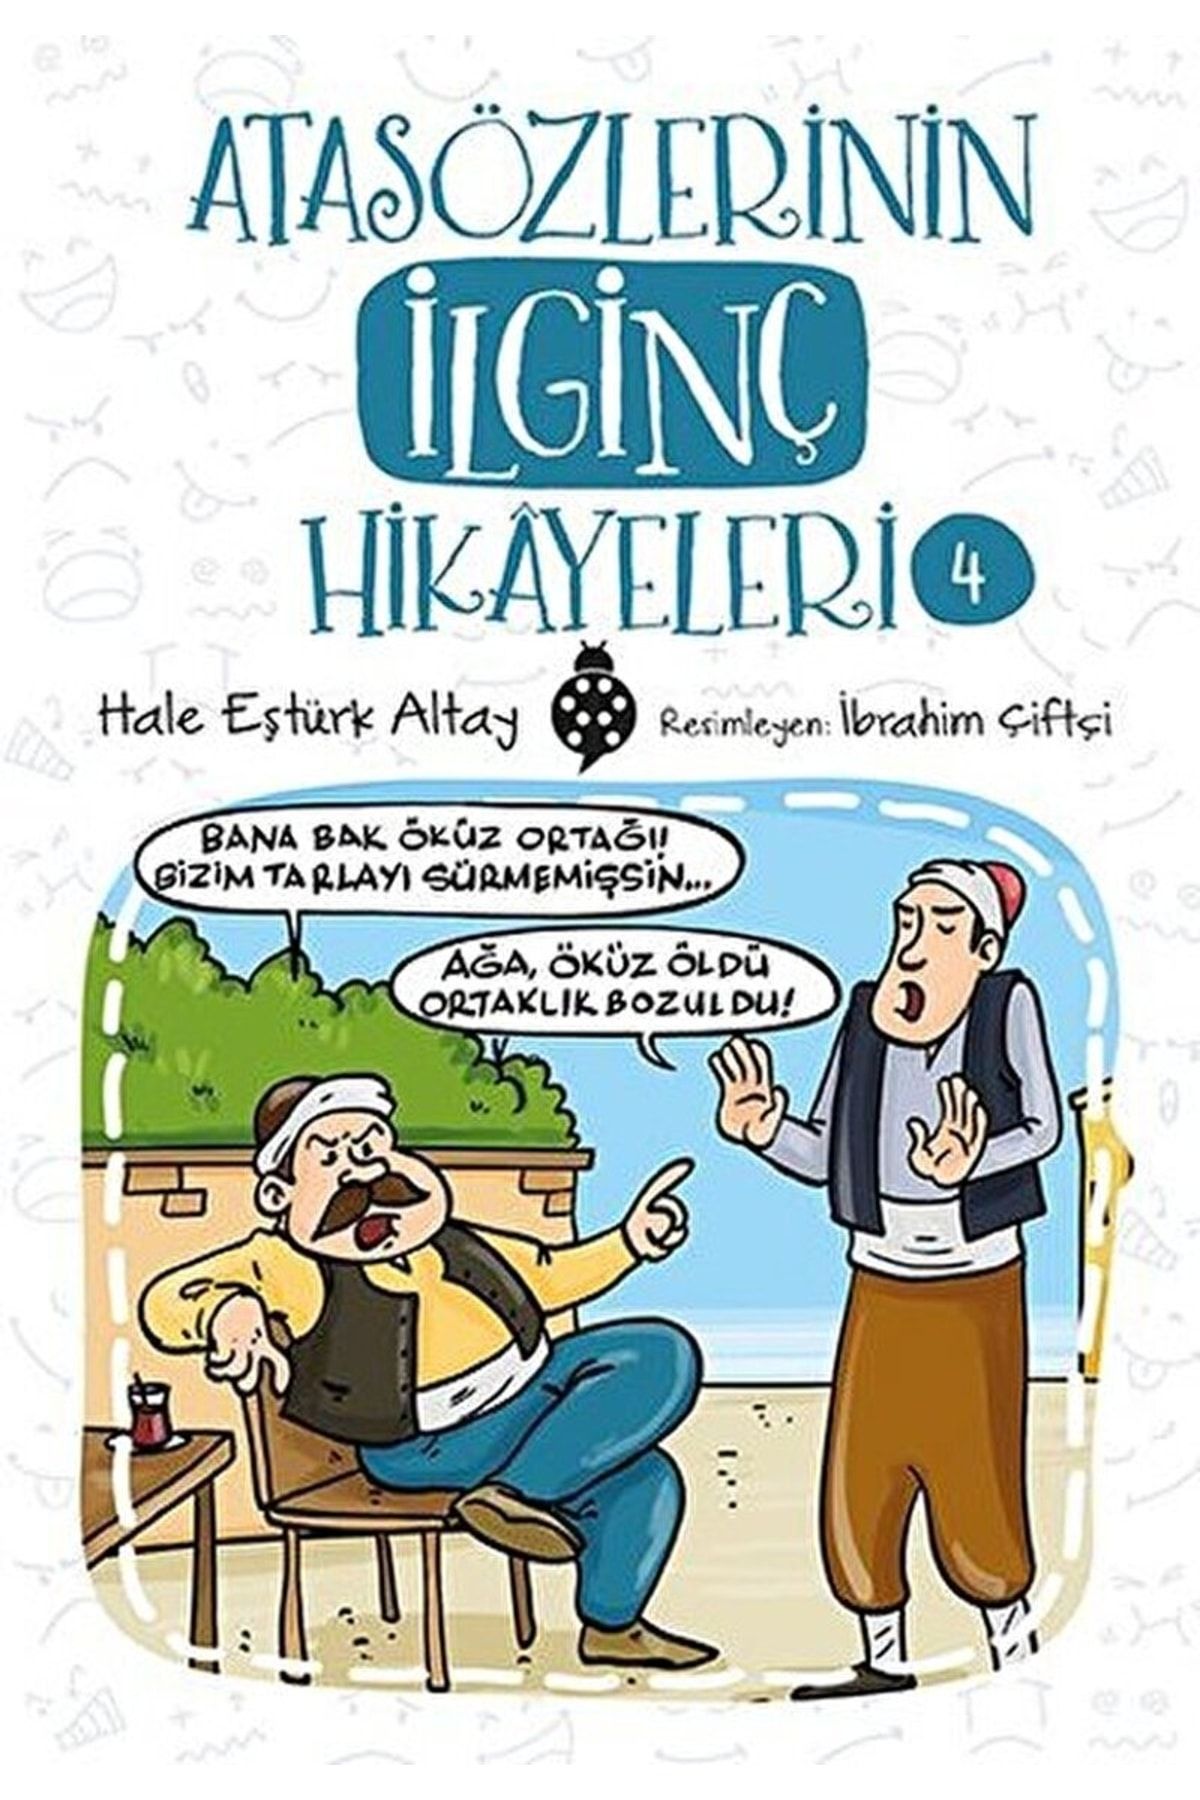 Uğurböceği Yayınları Atasözlerinin Ilginç Hikayeleri 4 / Hale Eştürk Altay / / 9786052236727